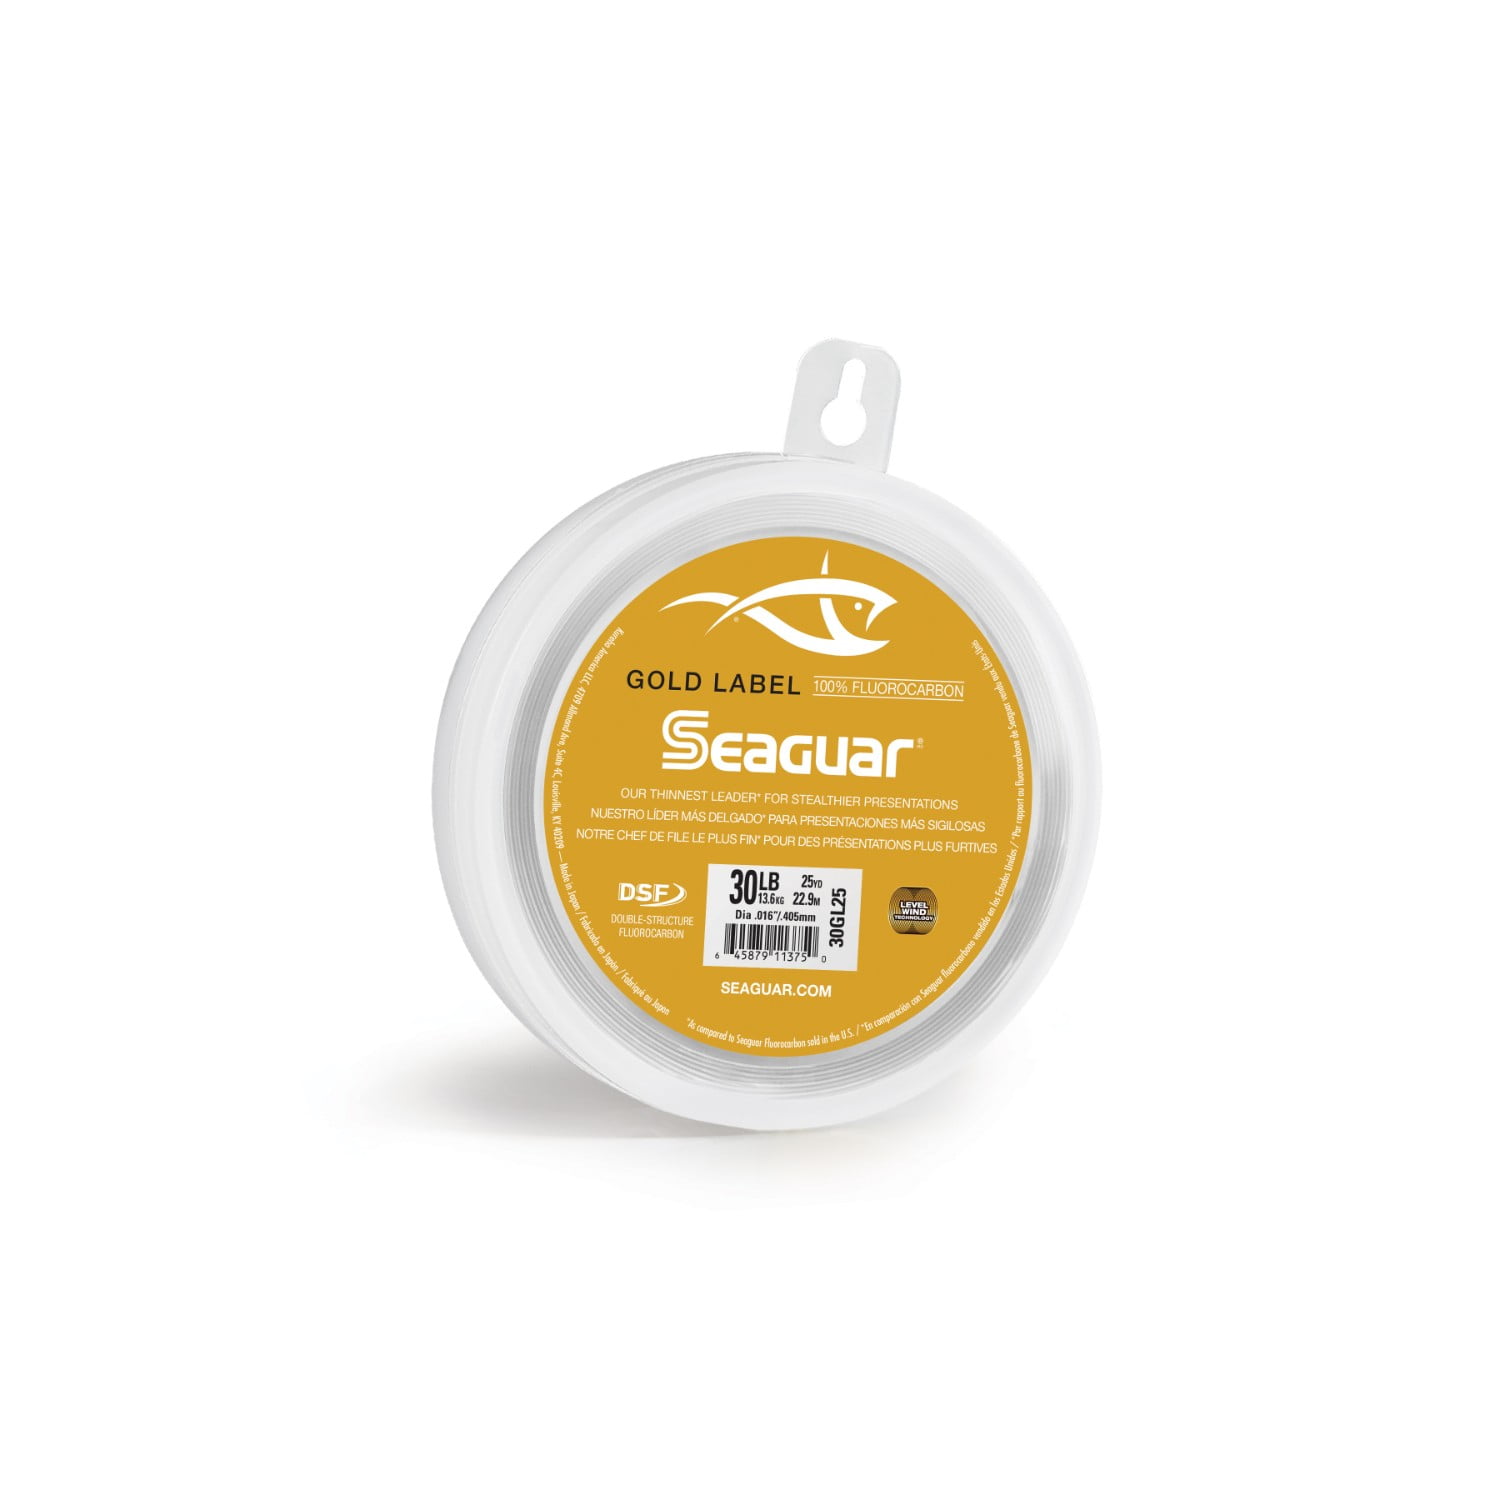 Seaguar Gold Label 25 Flourocarbon Leader 